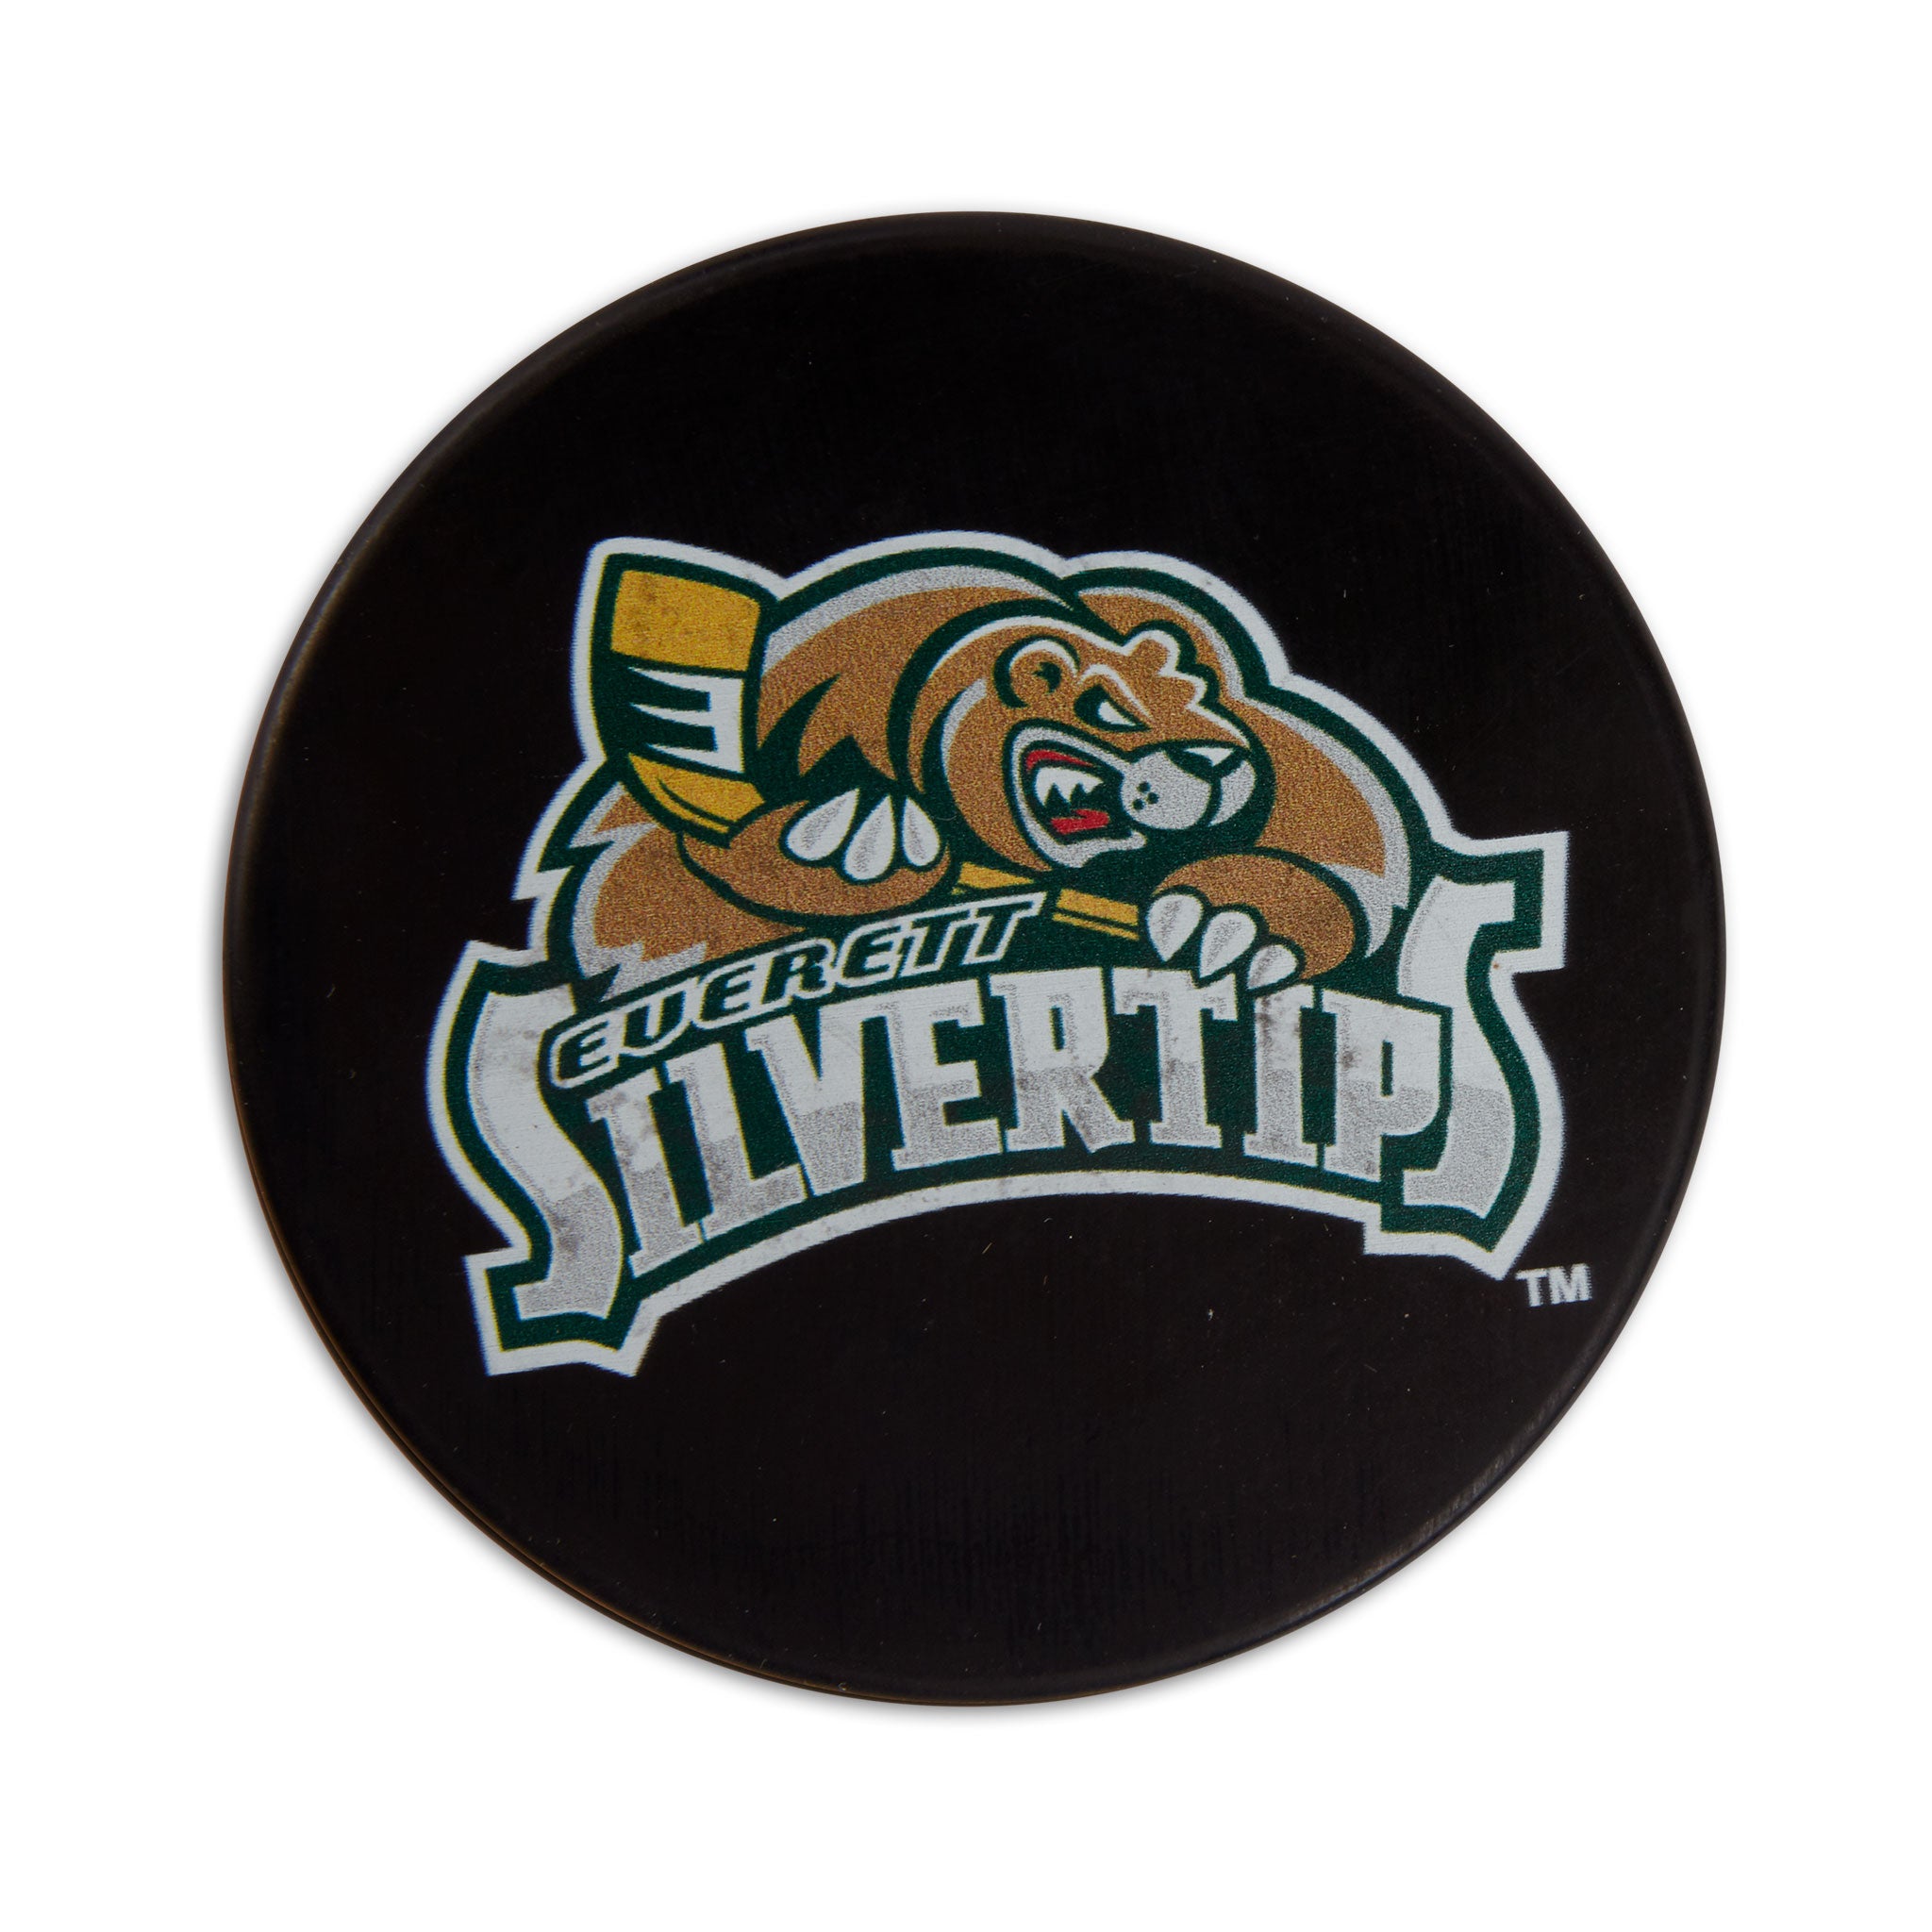 Everett silvertips chl hockey jersey for Sale in Everett, WA - OfferUp